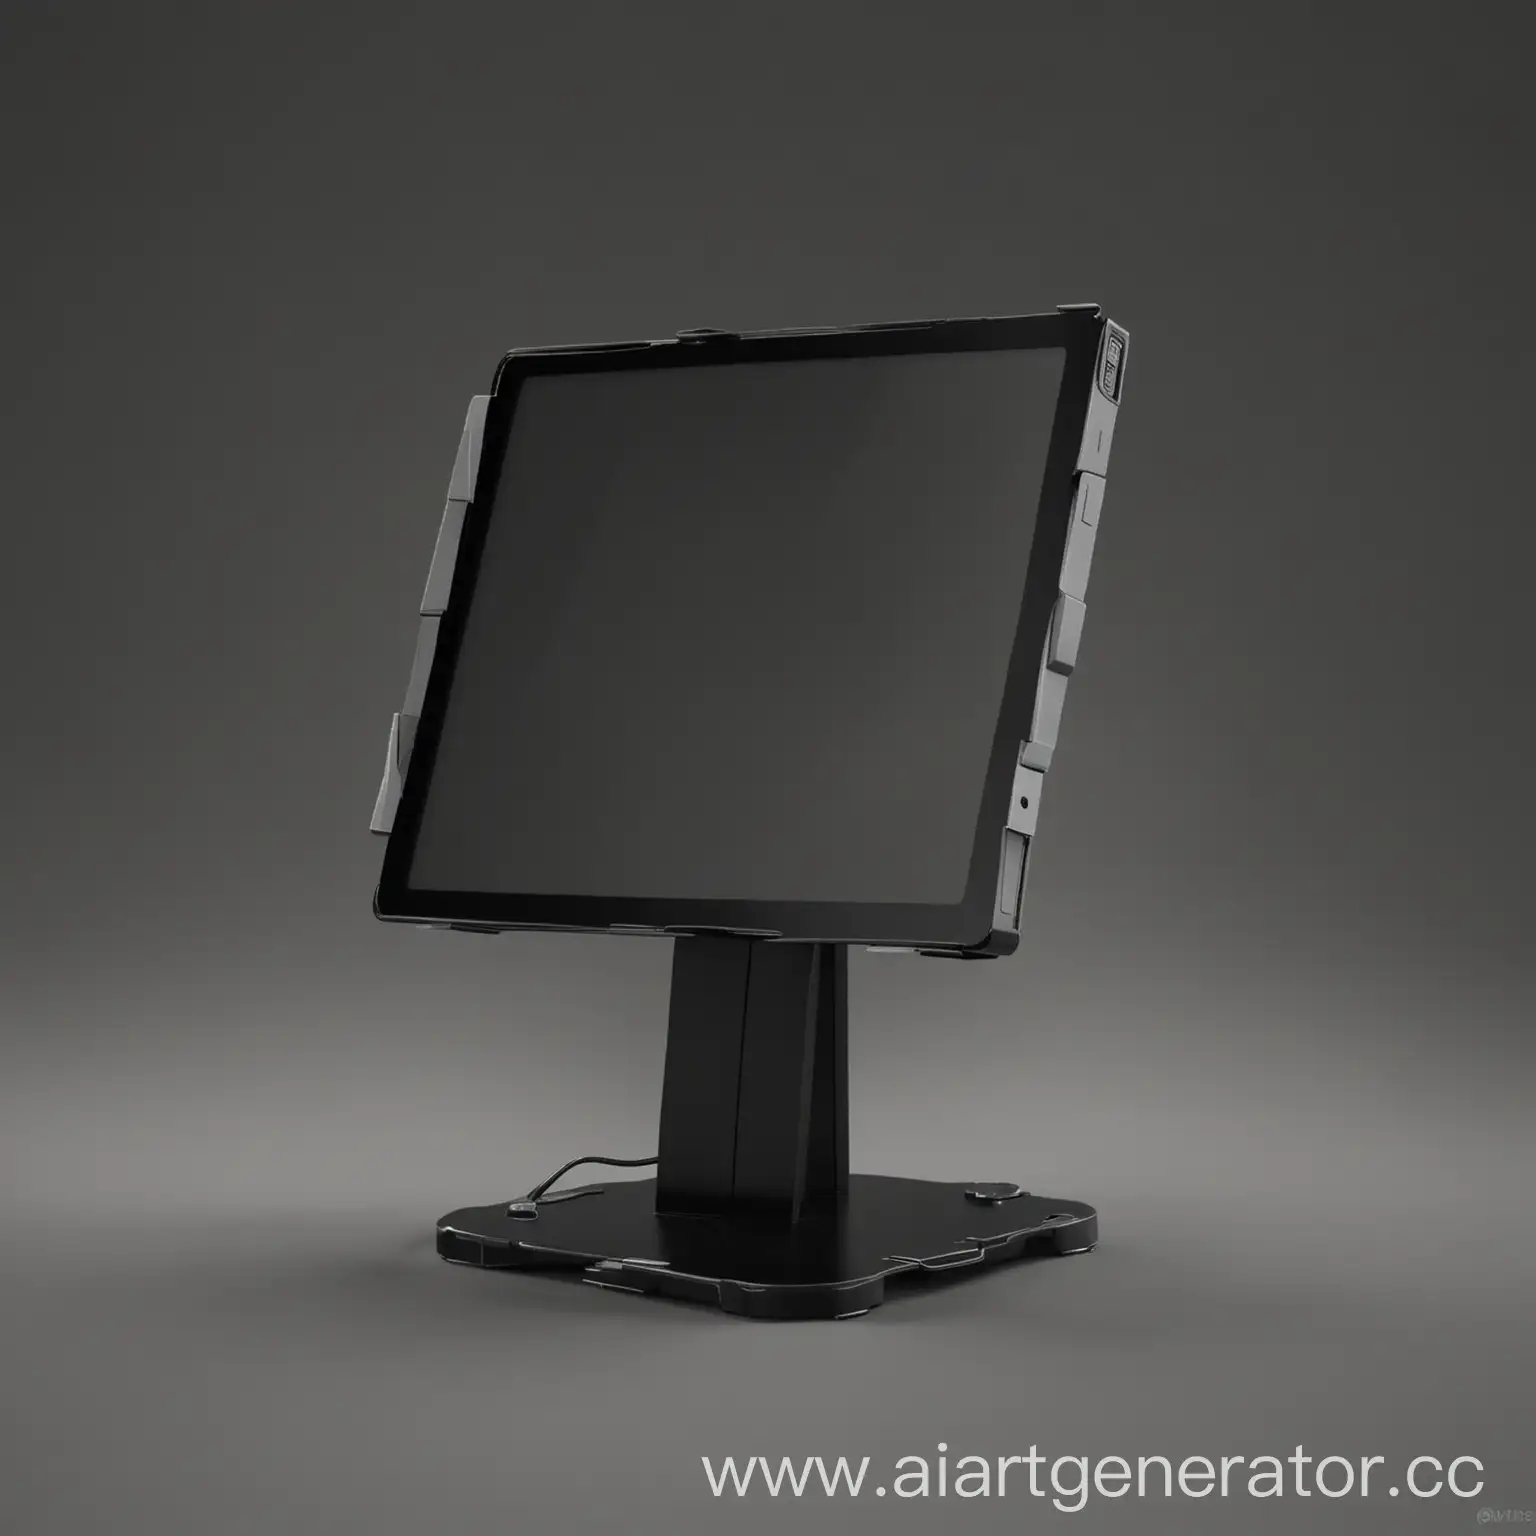 электронный гаджет на подставке черного цвета, который можно ставить на стол с маленьким экраном